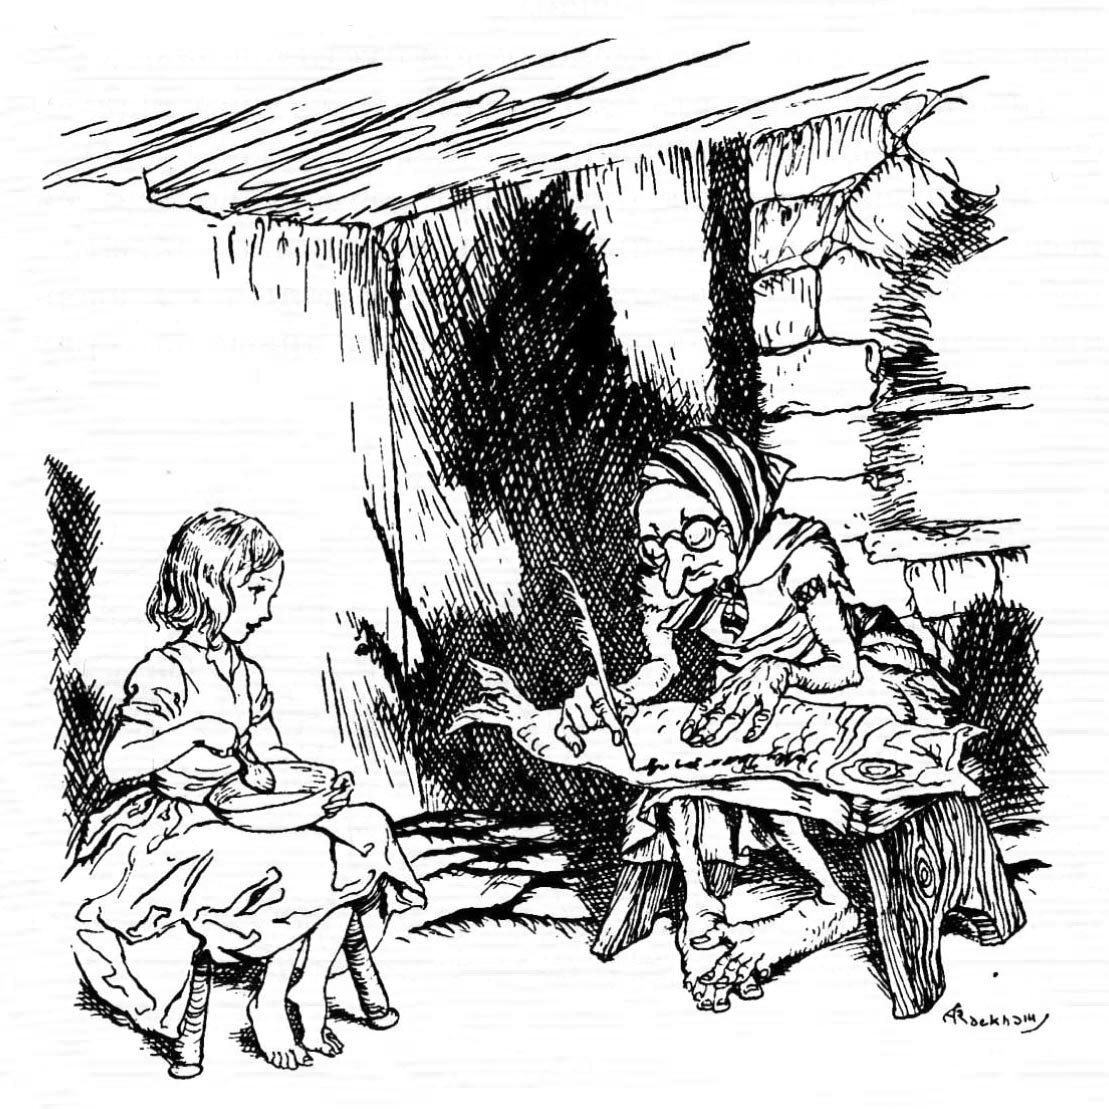 Иллюстрации Артура Рэкхема к сказке «Снежная королева»